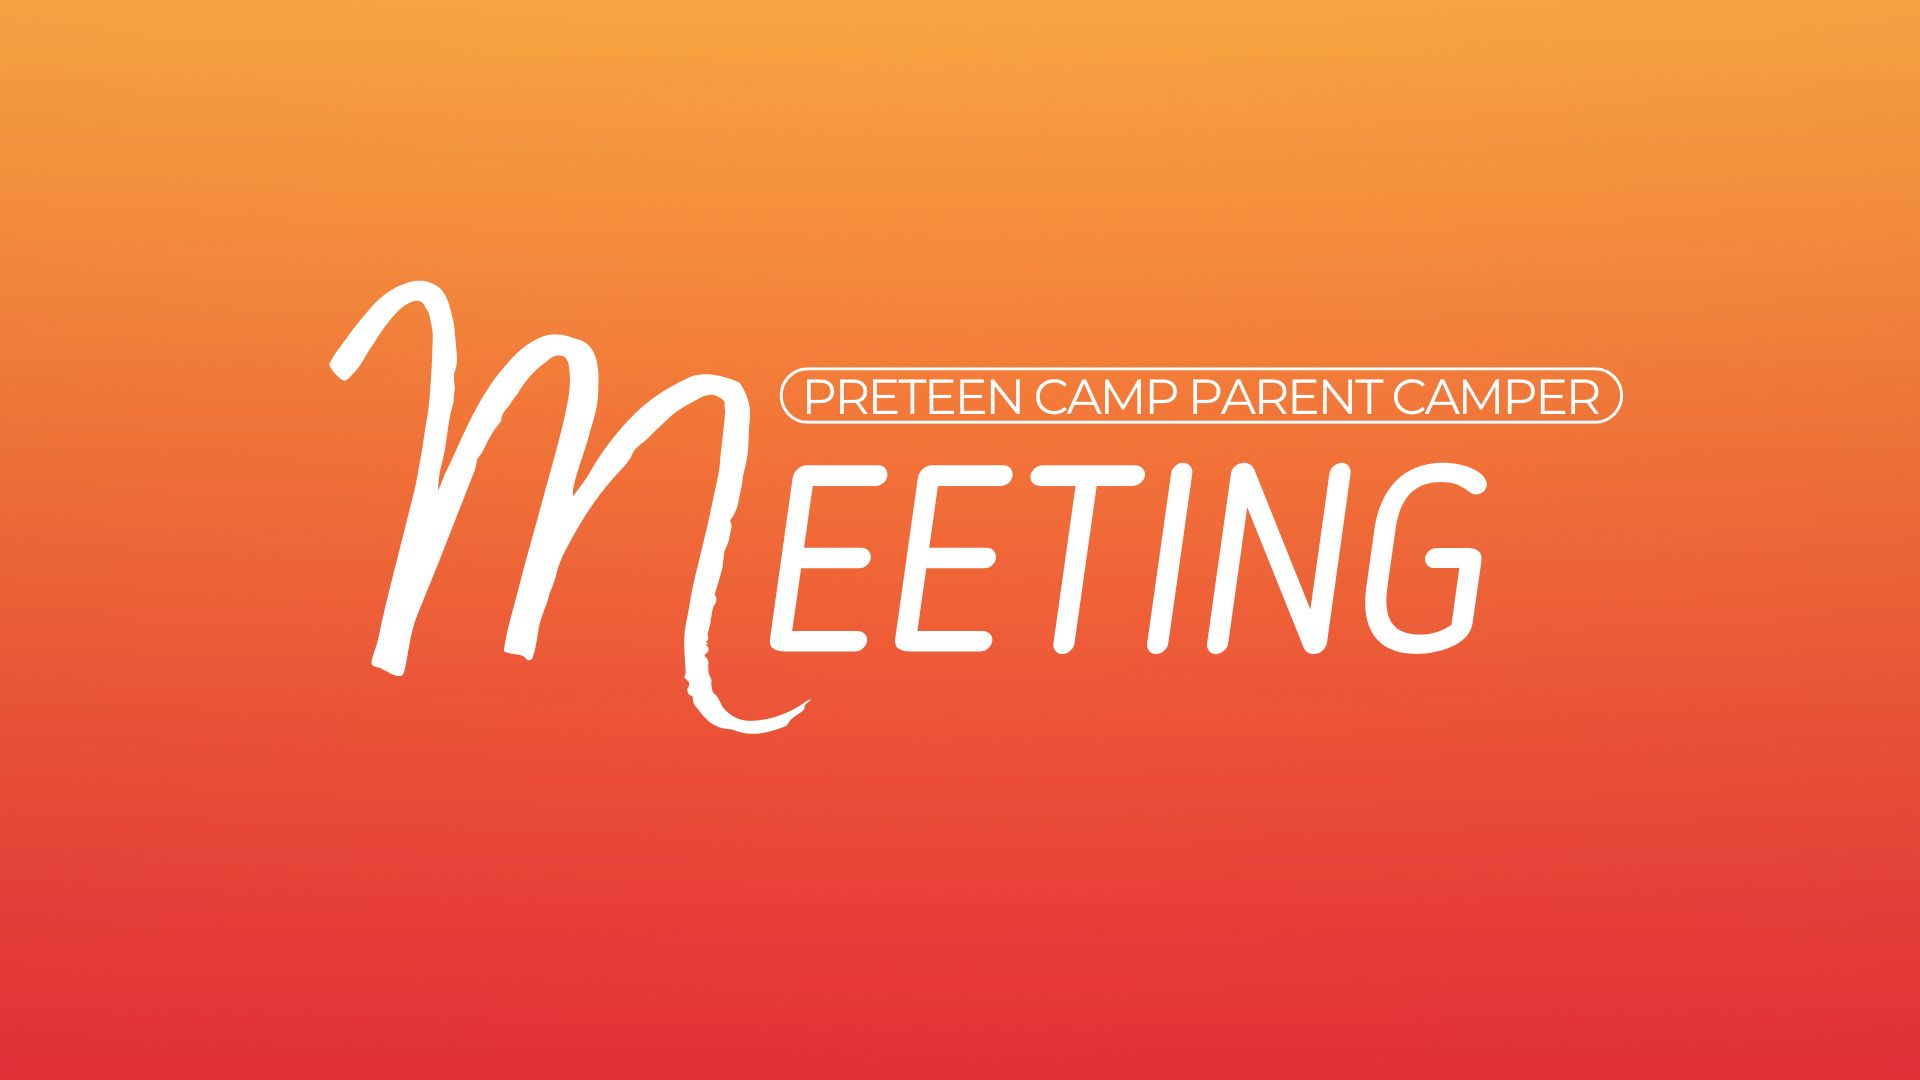 Preteen Camp Parent Camper image